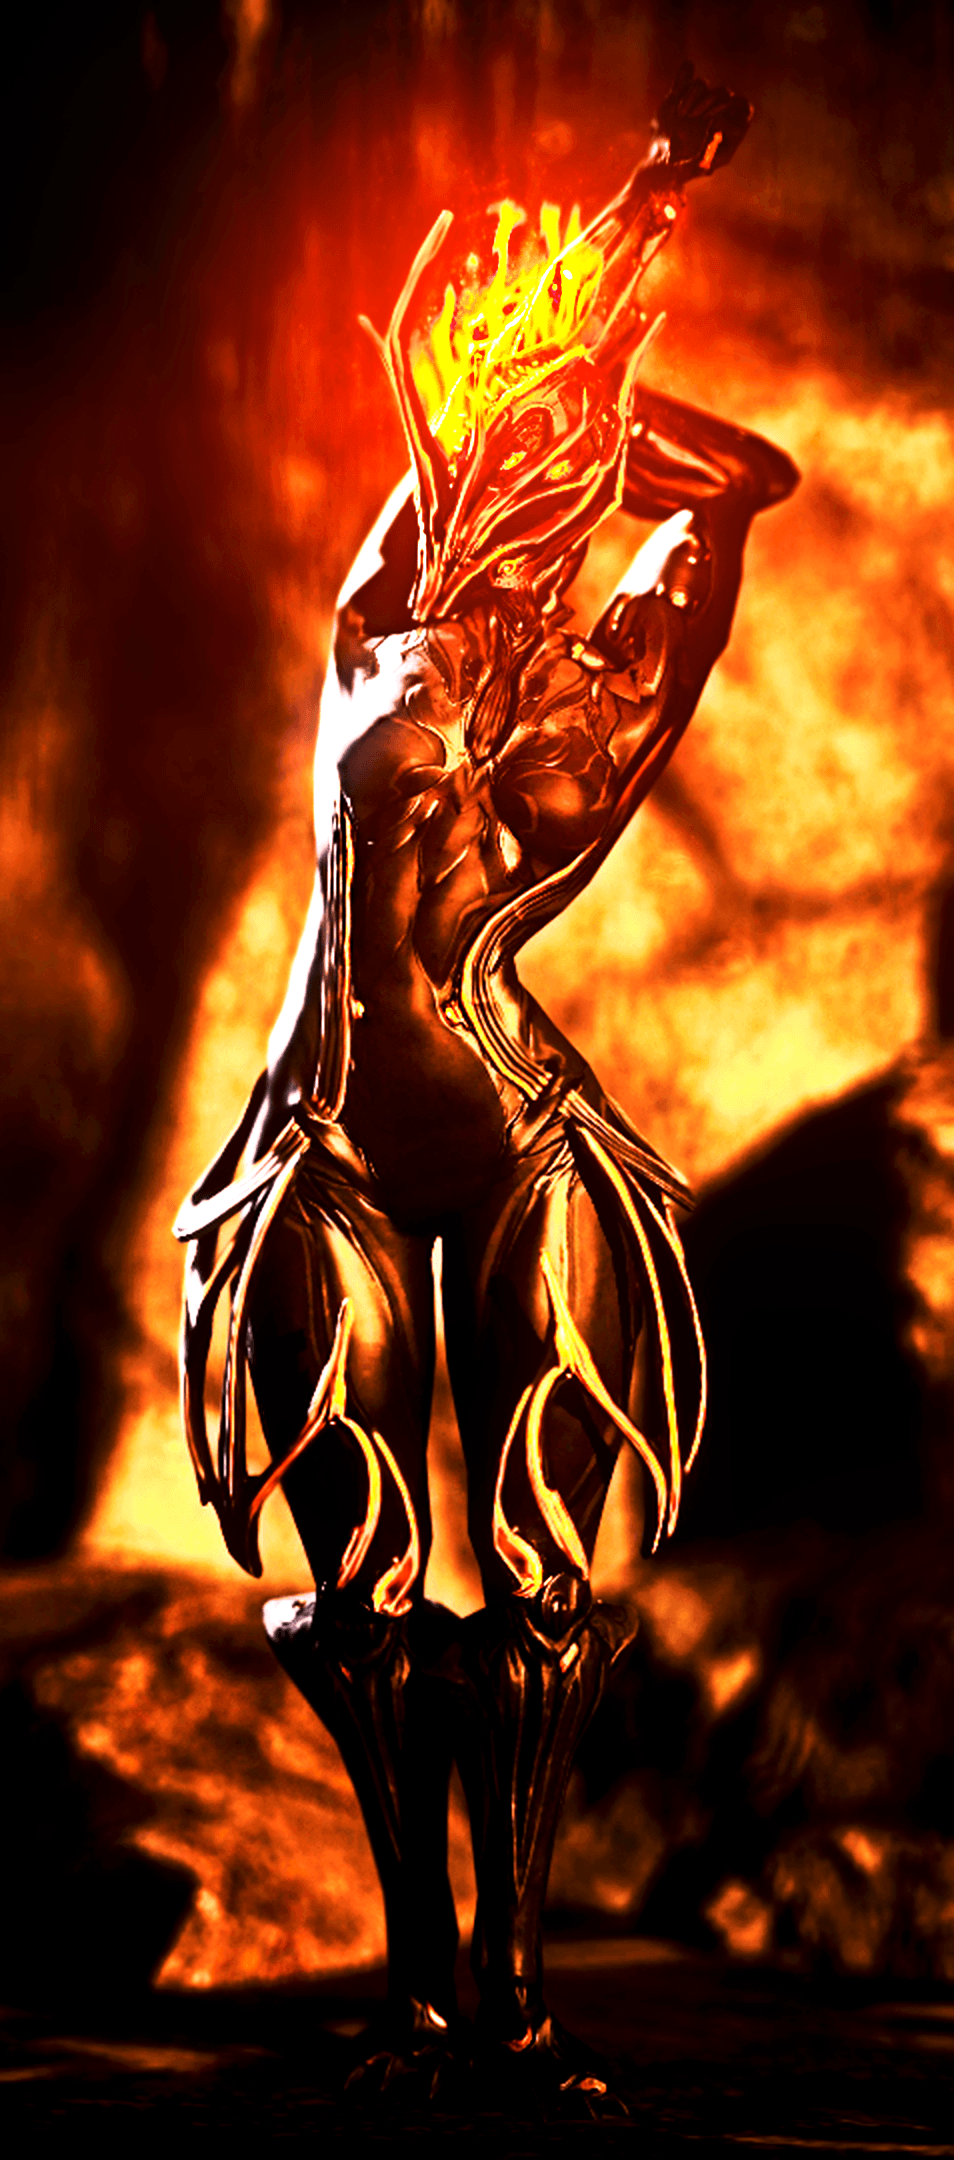 Warframe : Ember , The Goddess Of Firestorm by AnoobArak94